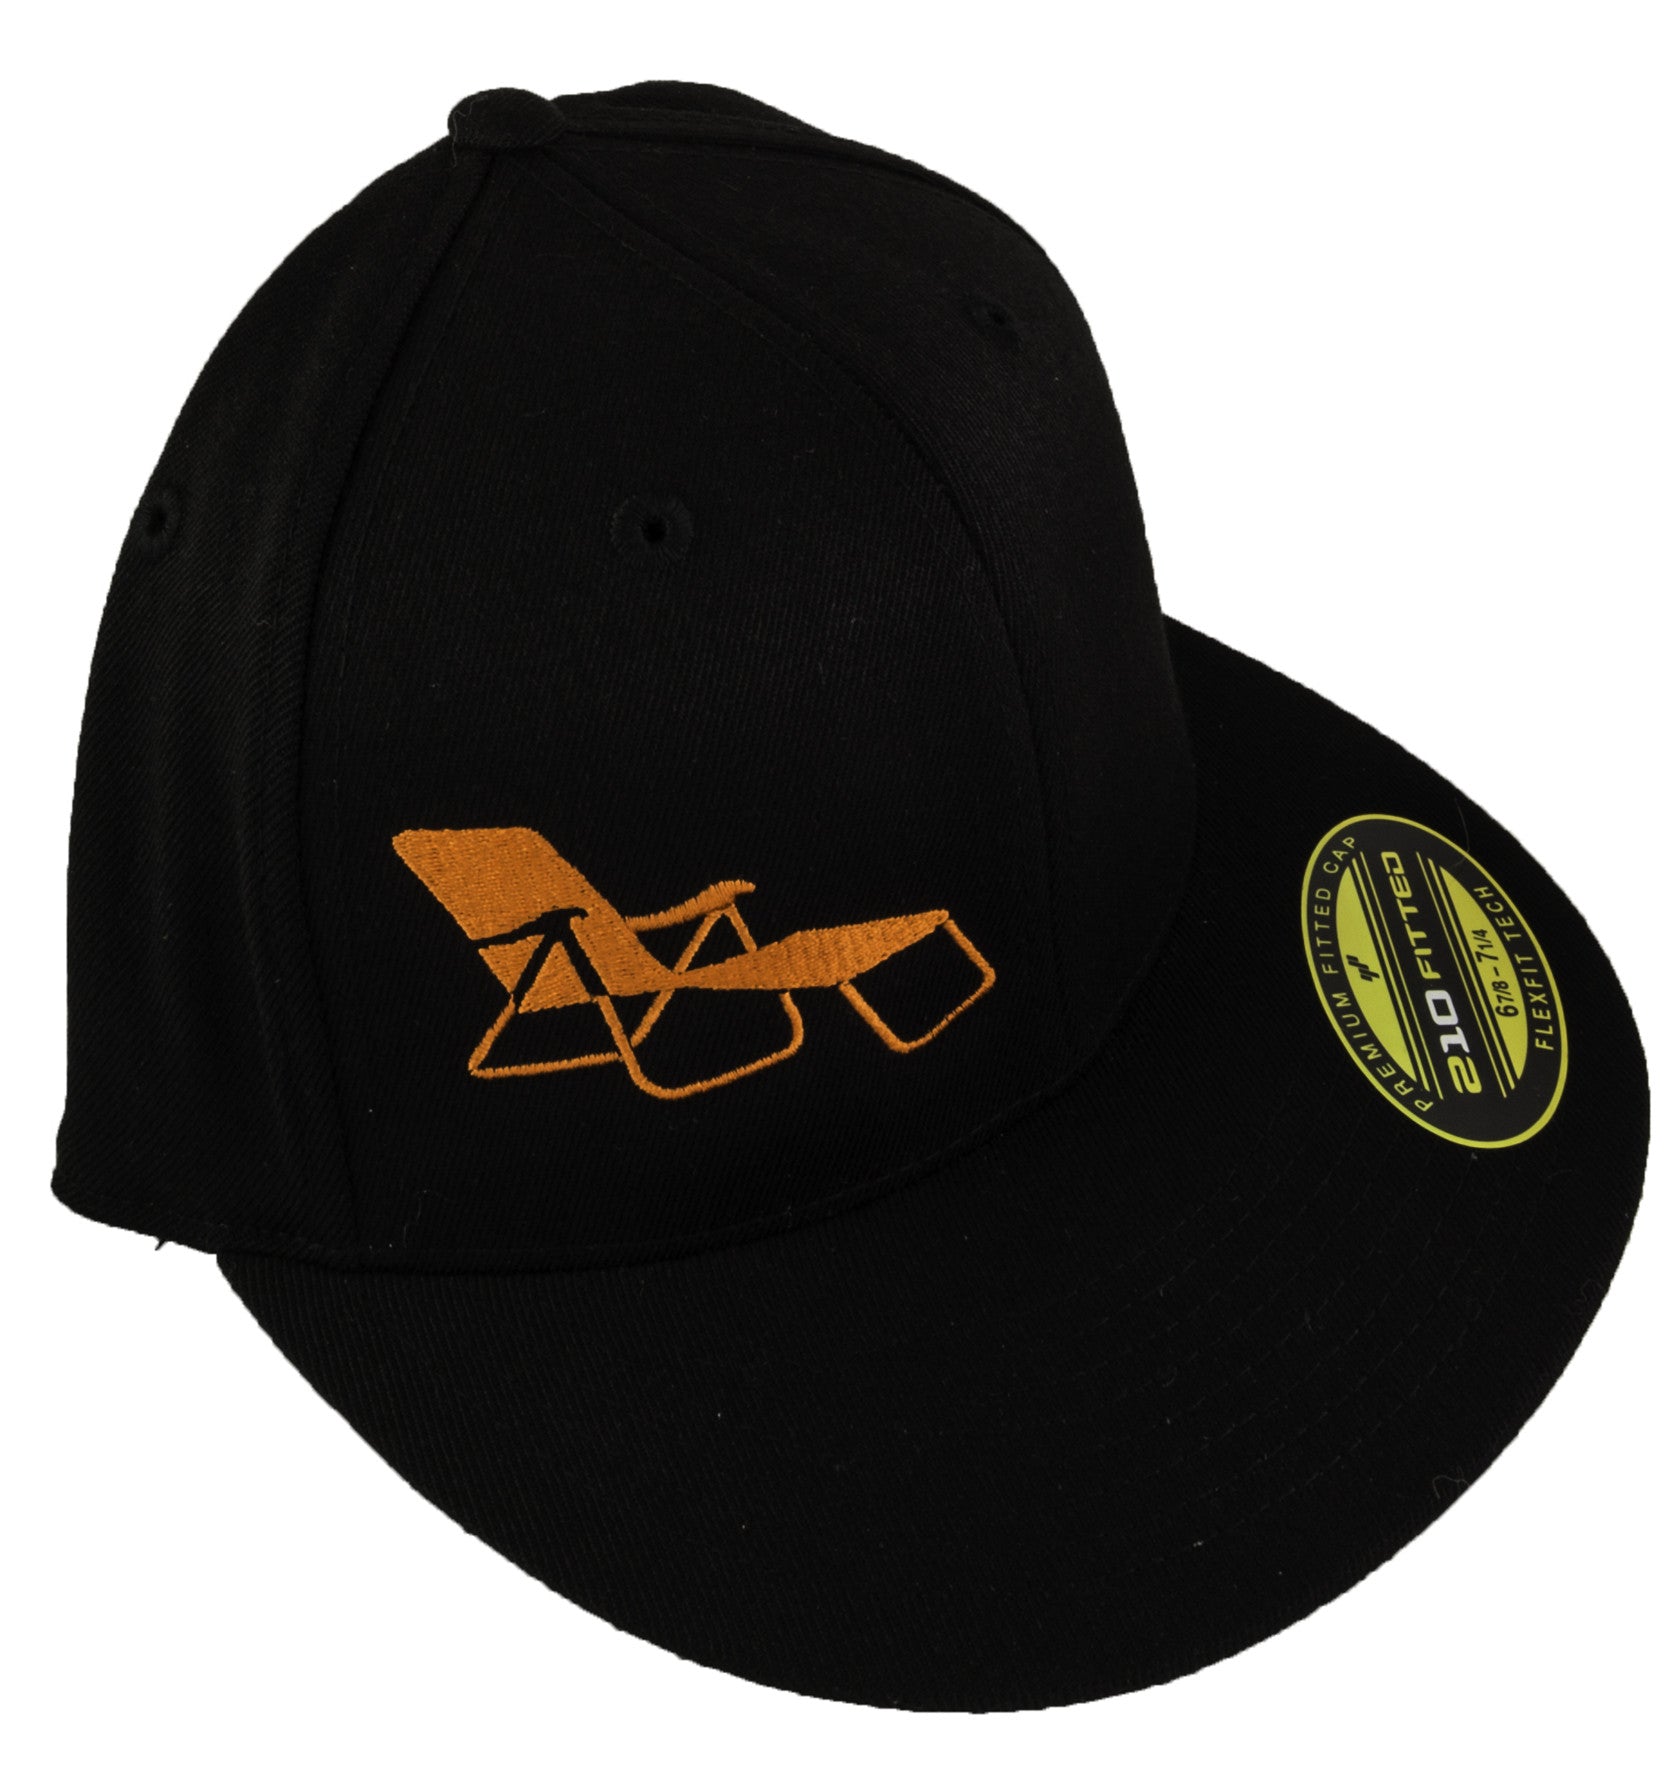 rideSFO Lounge Hat Black/Orange